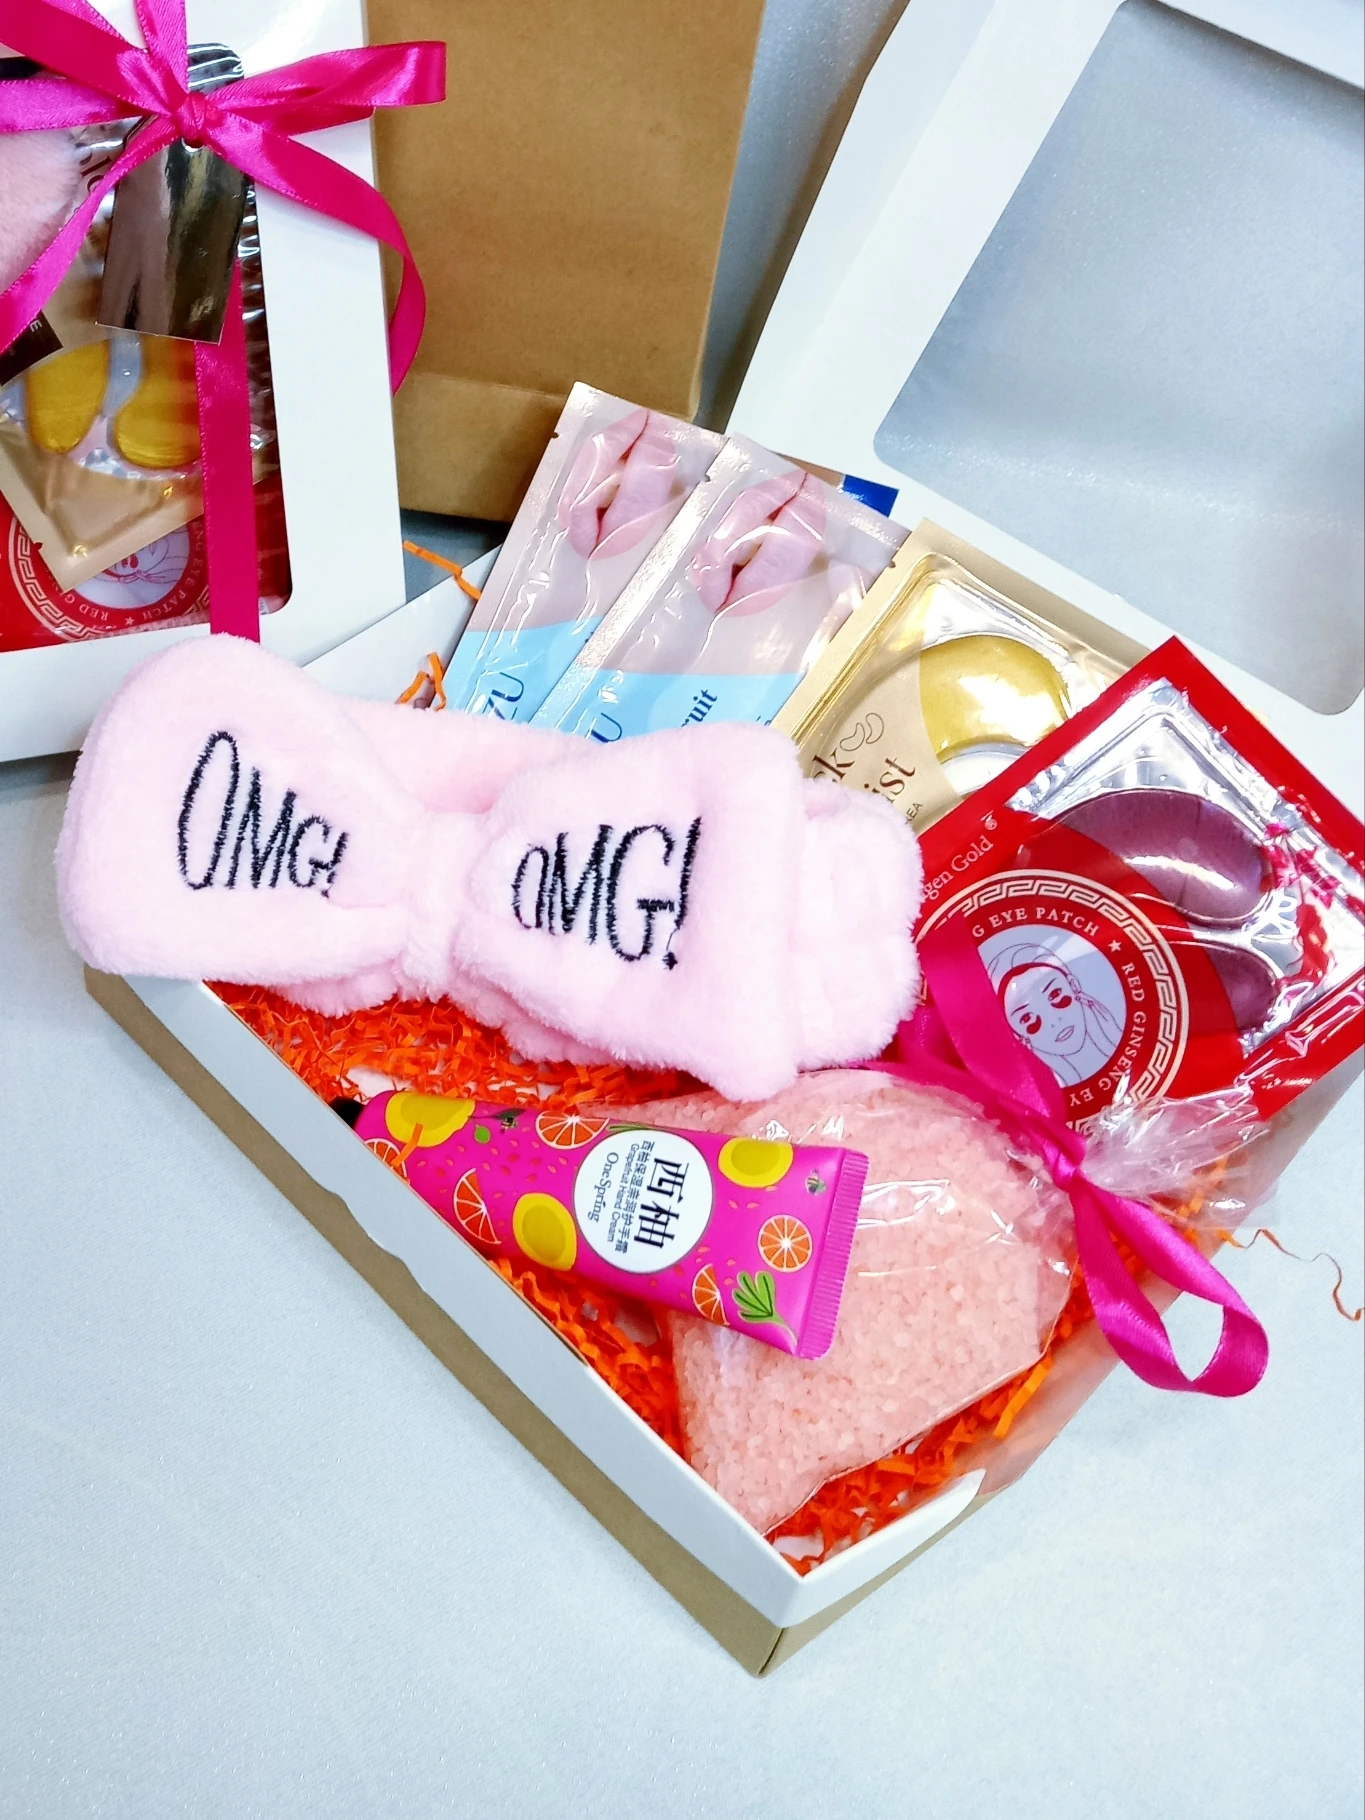 Подарочный набор для женщин Сияние /Beauty Box /на день рождения/набор  косметики/бьюти бокс | AliExpress